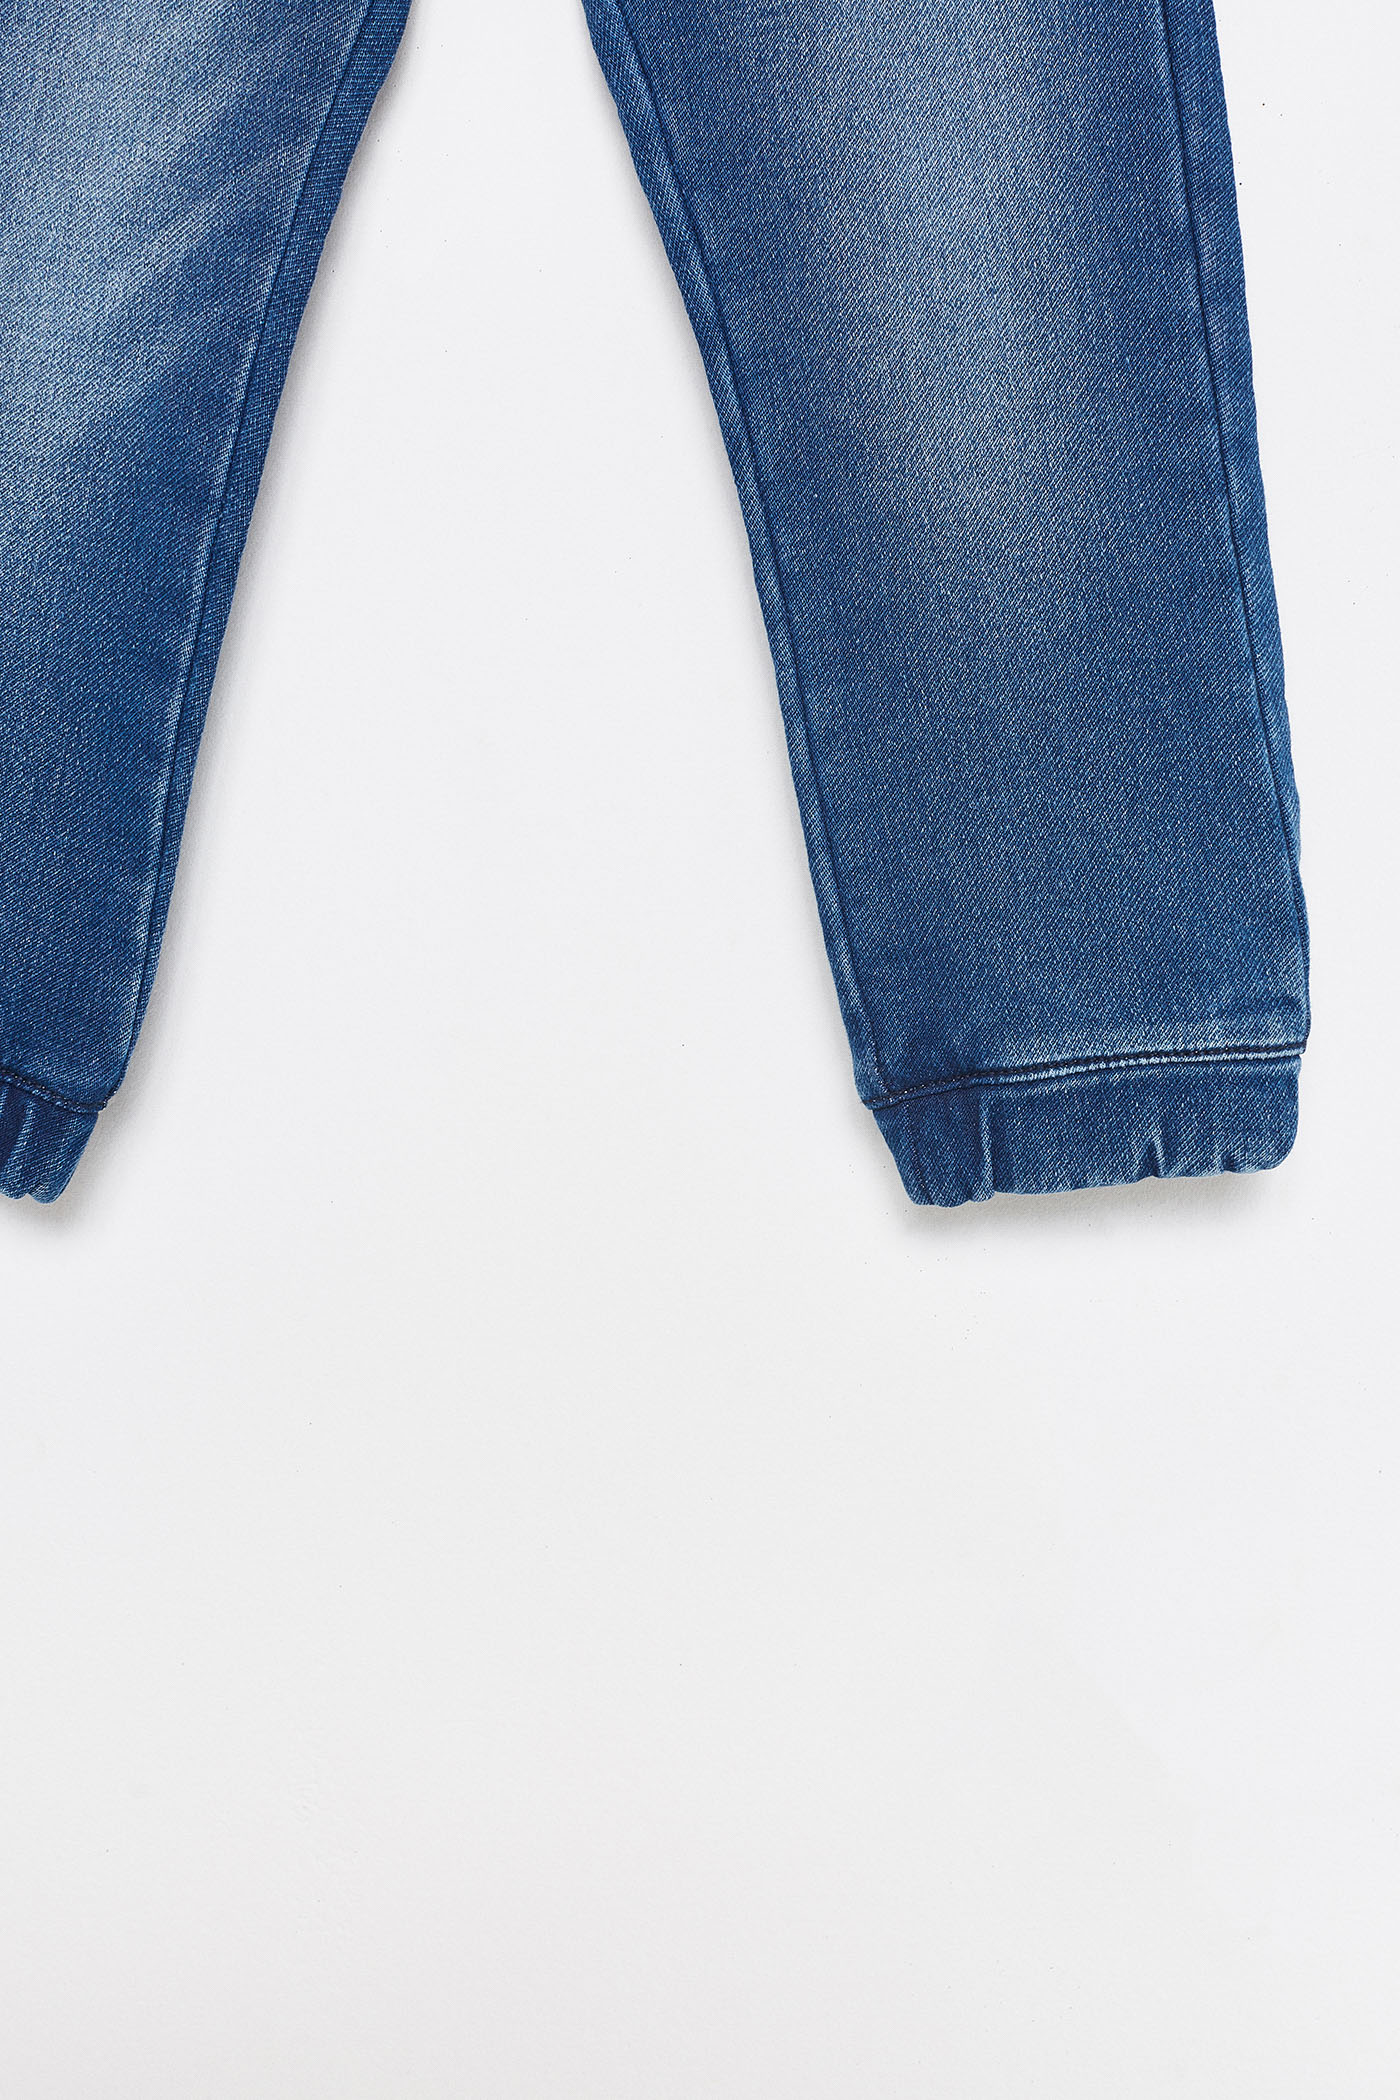 شلوار جینز 25798 سایز 3 تا 10 سال مارک Sfera